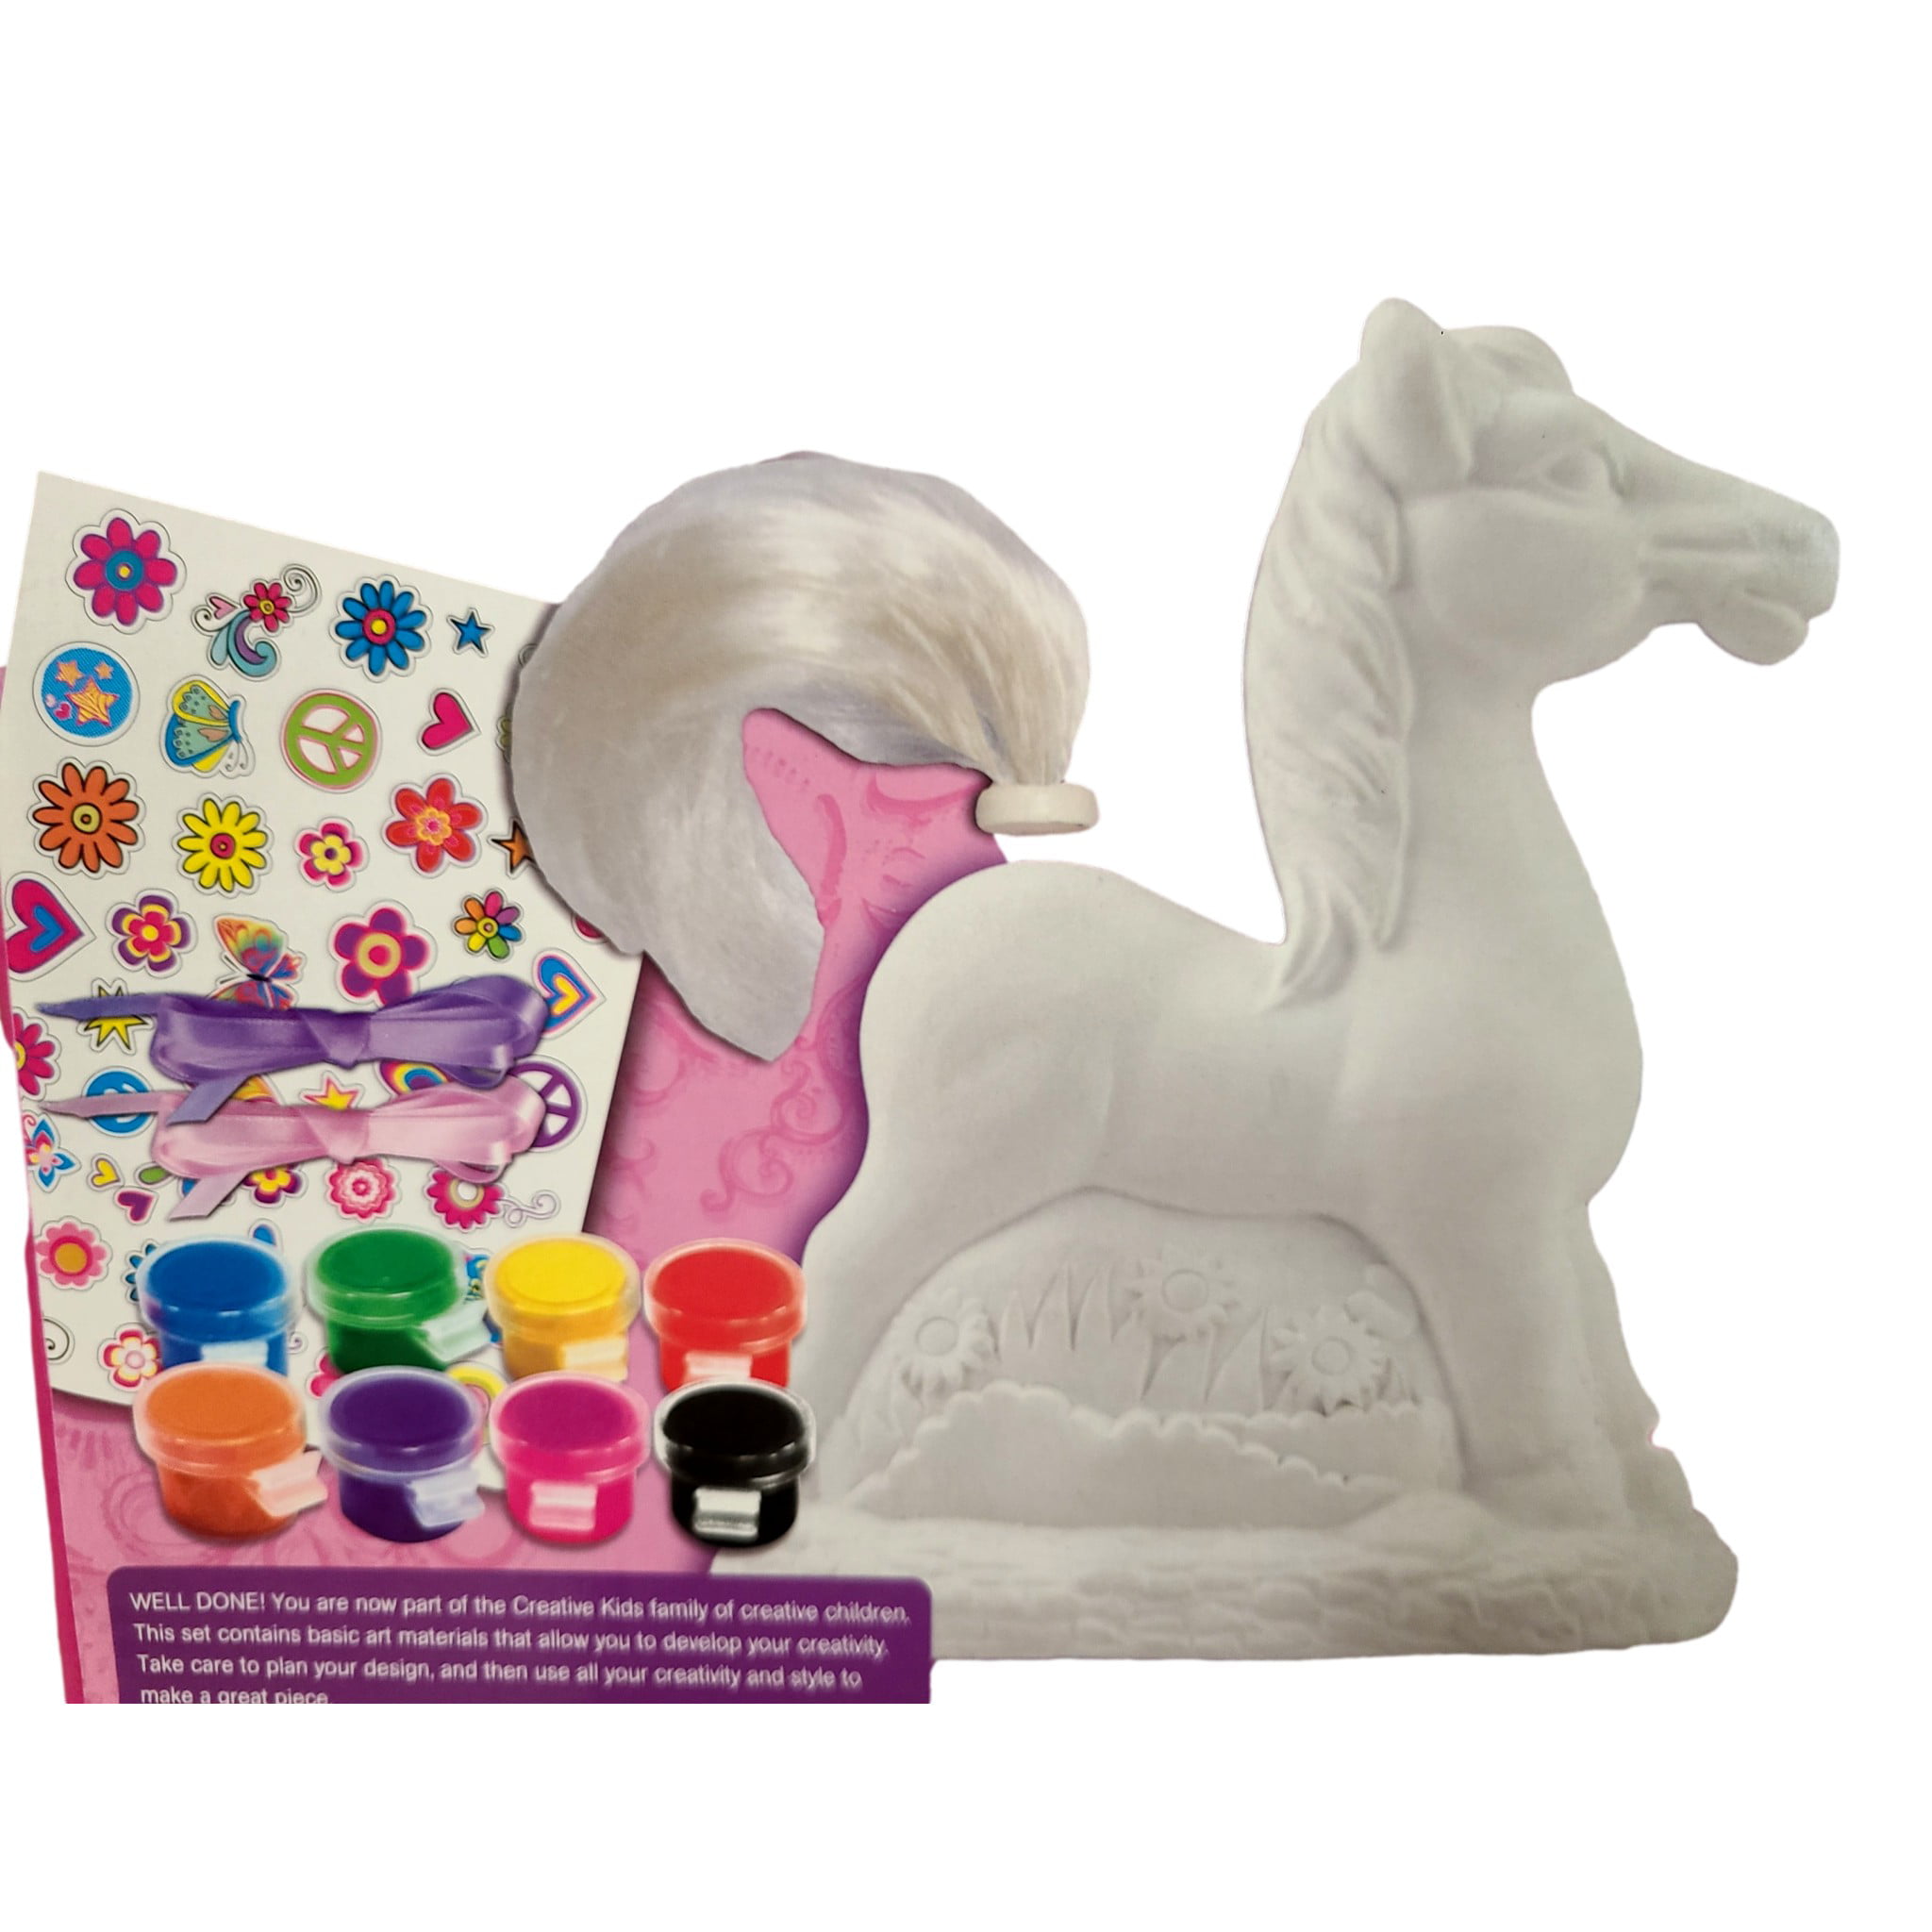 Unicorn Party Favors | Unicorn Paint Kit | Paint Kit Party Favor | Unicorn  Magnet DIY Craft Kit | Custom Party Favors | Unicorn Party